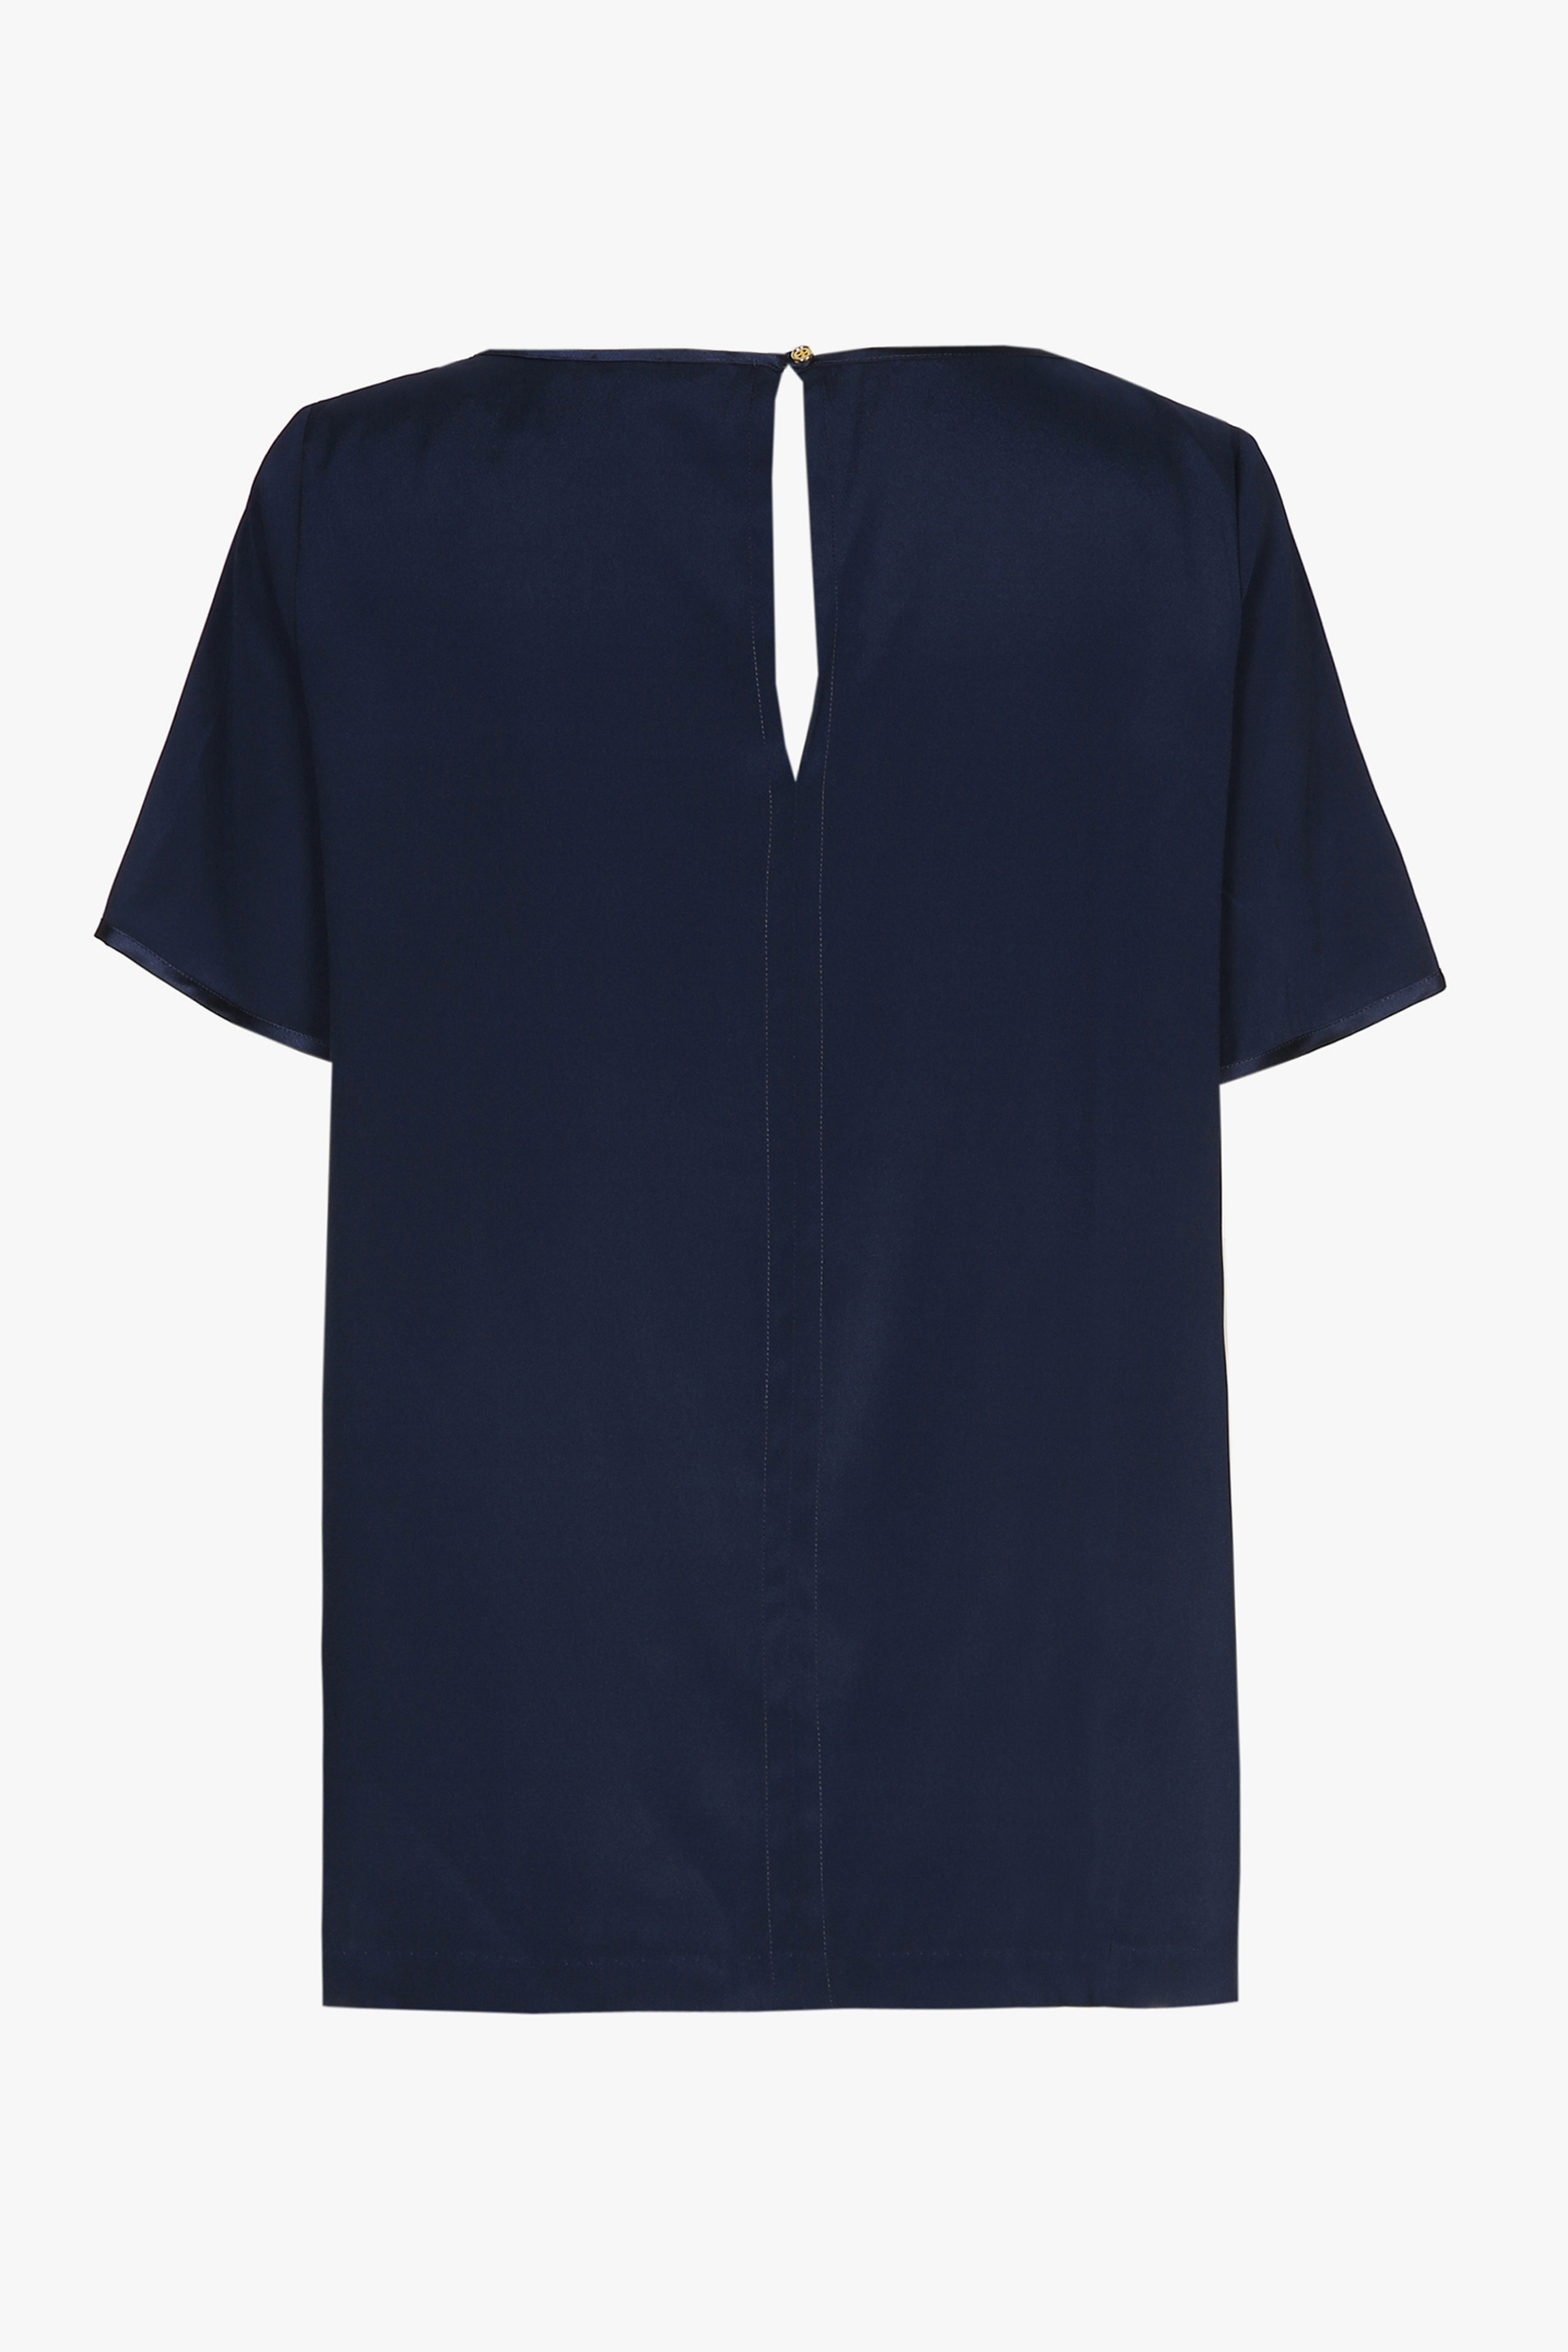 Navyblauw zijden T-shirt met korte mouwen